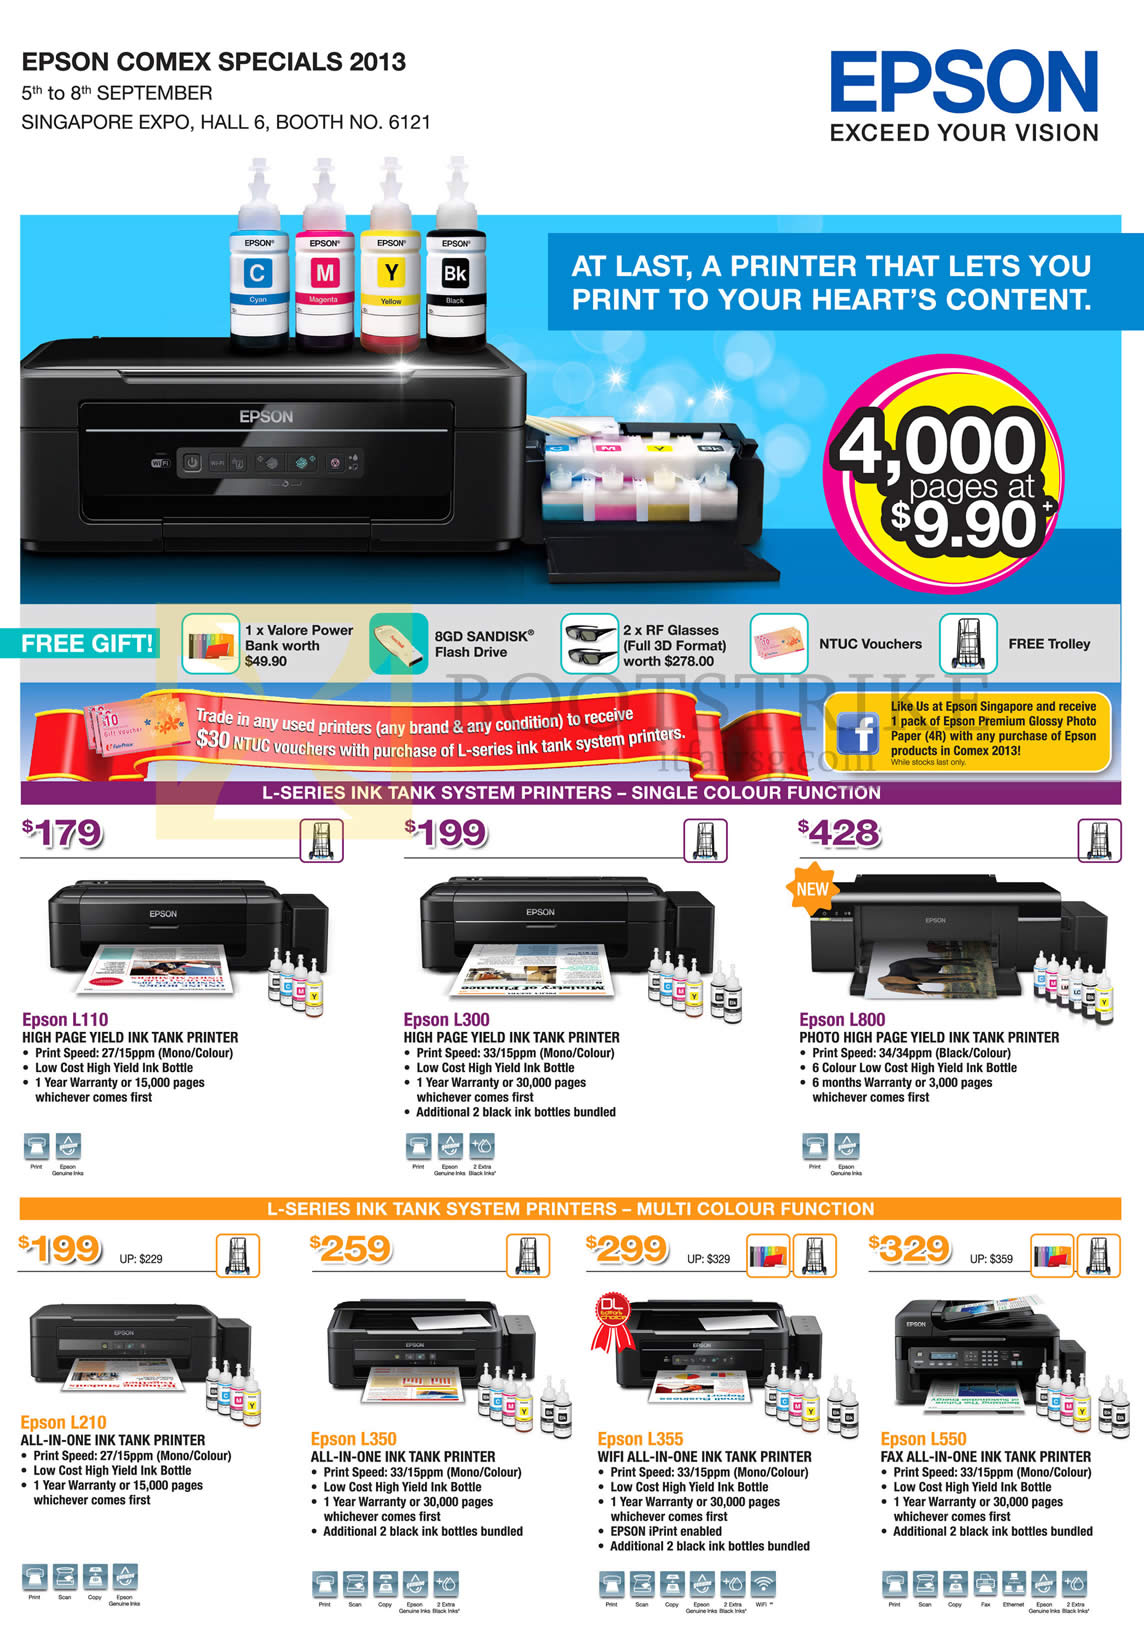 COMEX 2013 price list image brochure of Epson Printers Inkjet L110, L300, L800, L210, L350, L355, L550